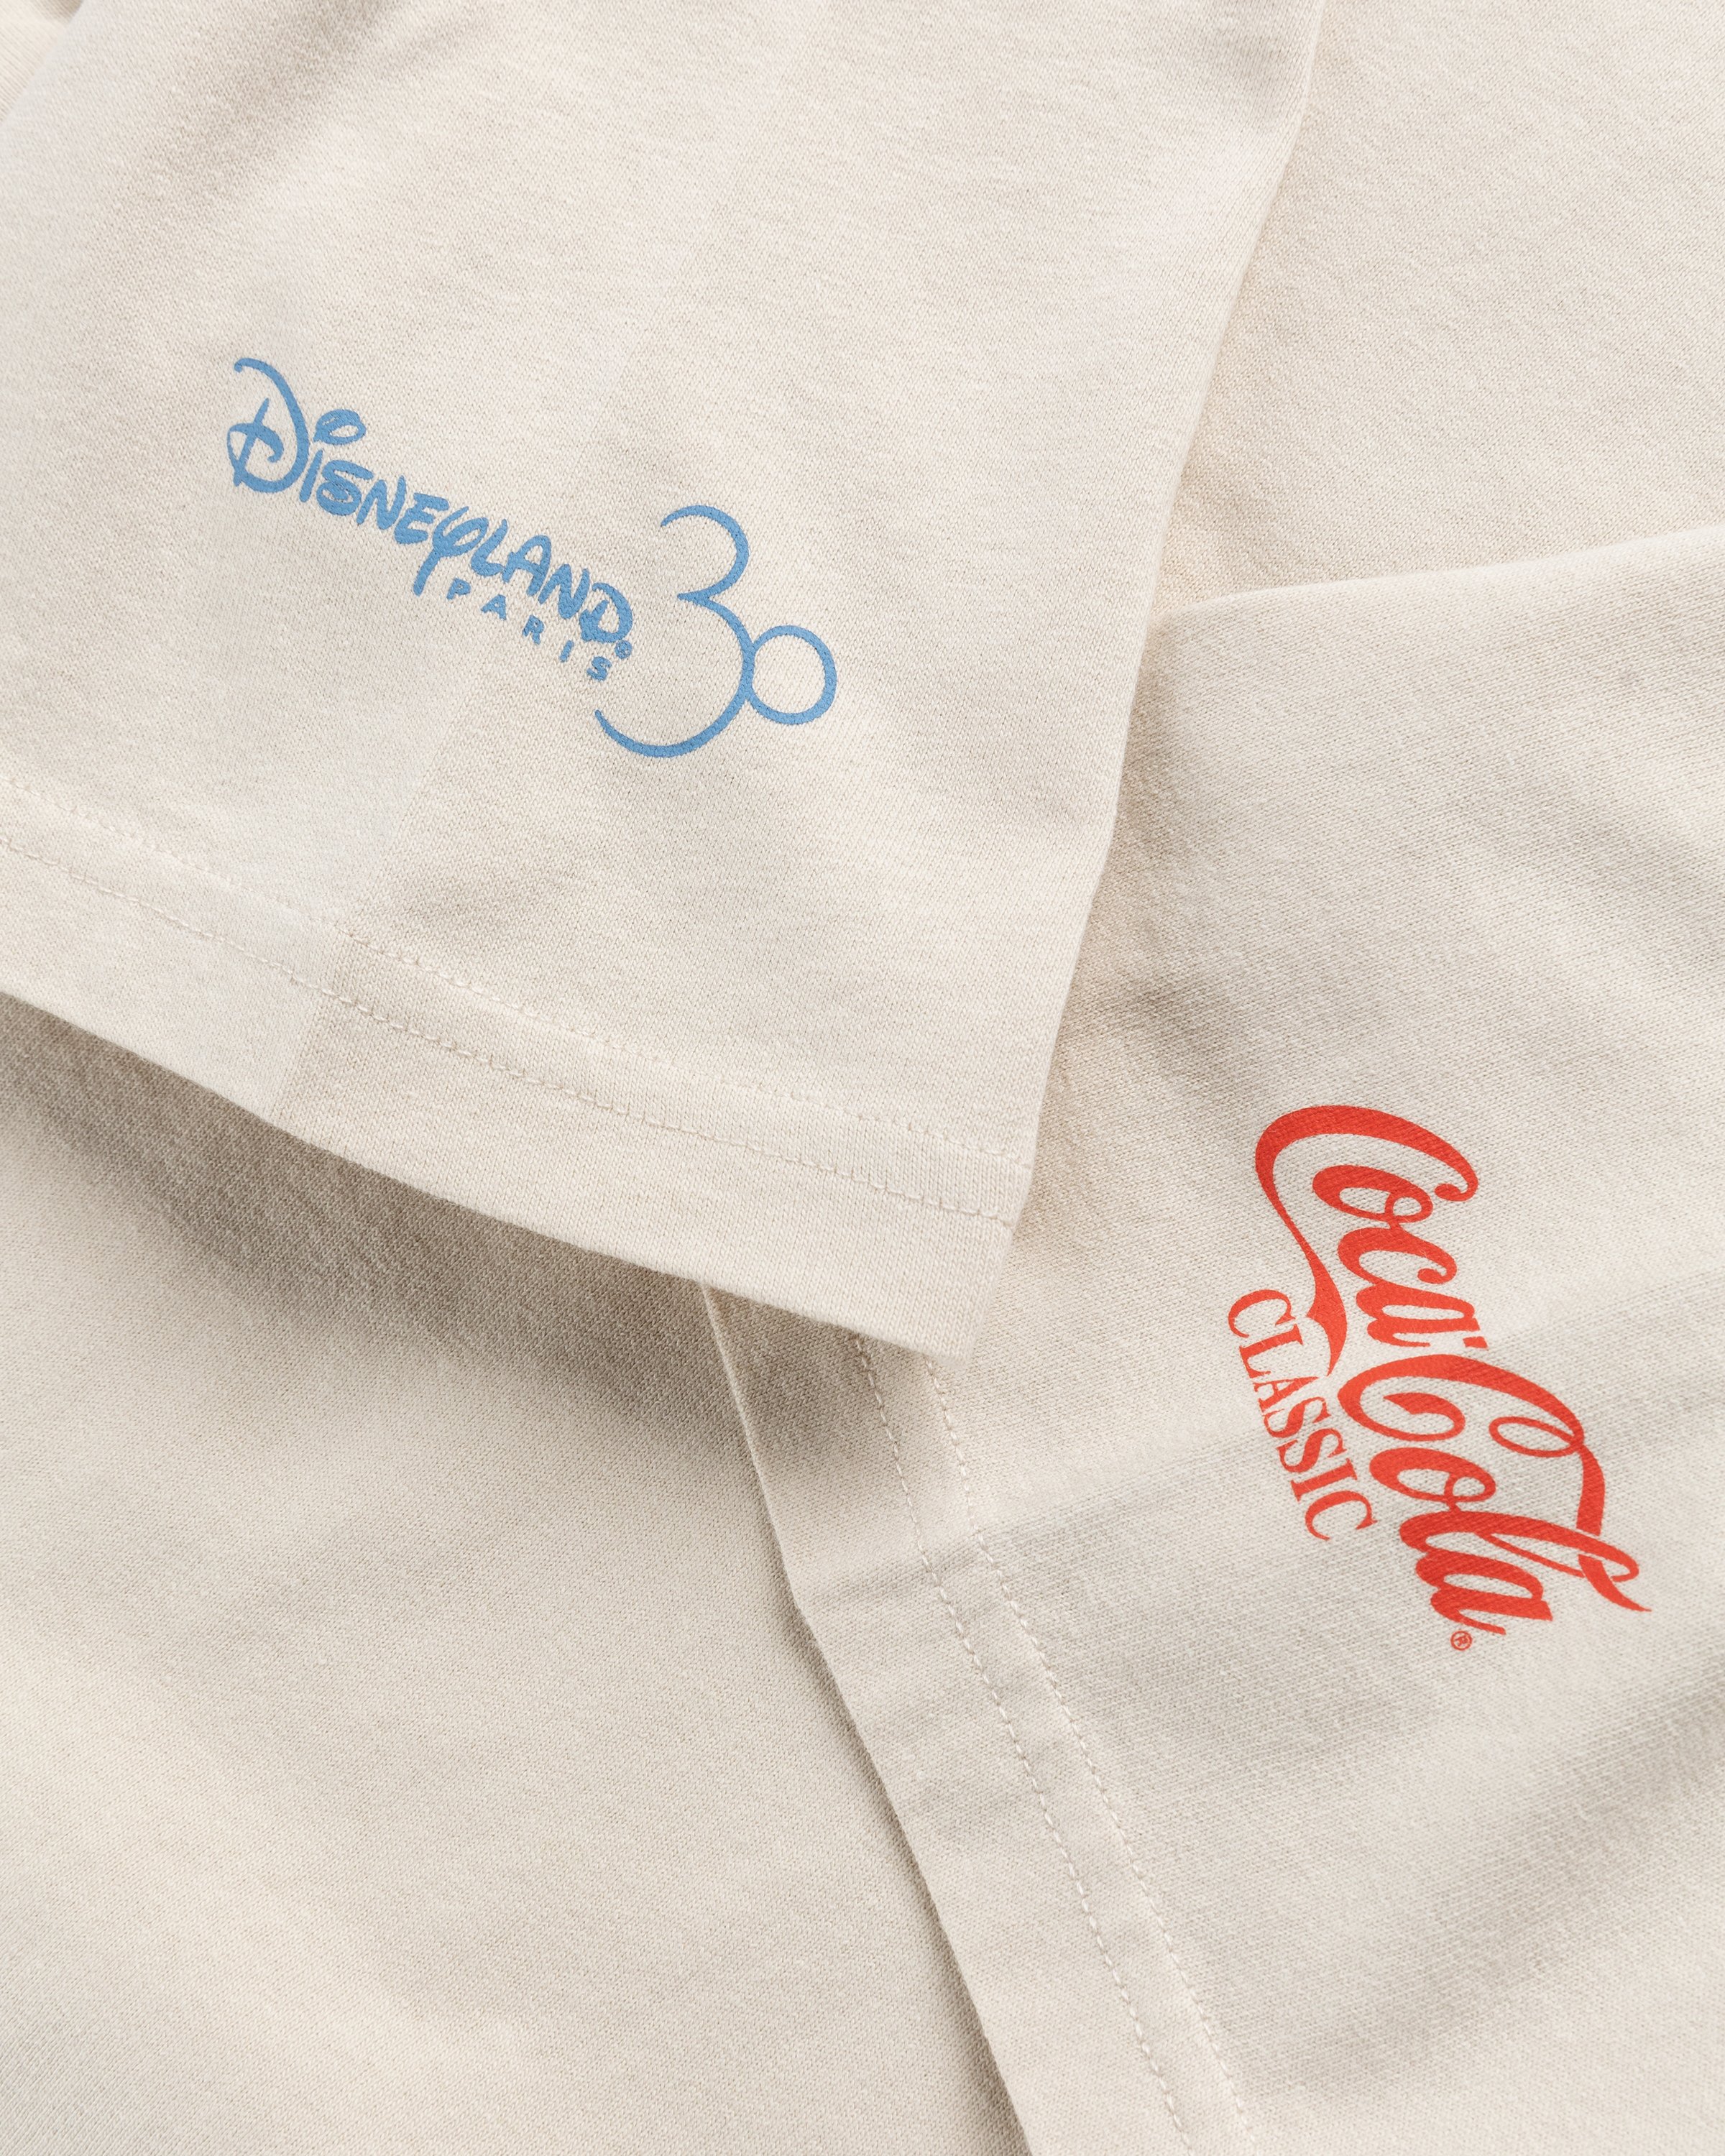 Coca-Cola x Disneyland Paris - Not In Paris 4 Classic Paris T-Shirt Natural - Clothing - Beige - Image 4